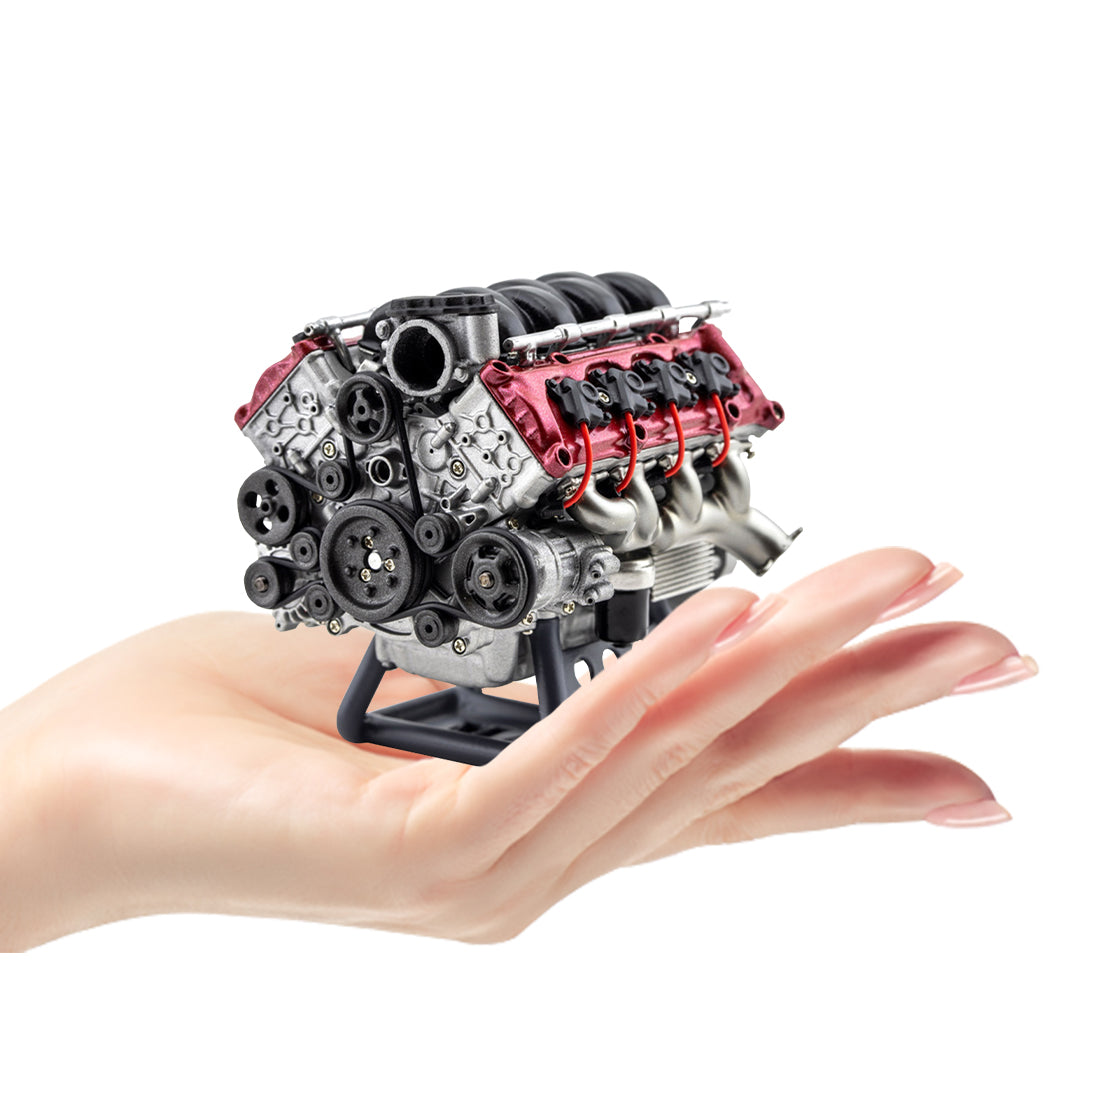 V8 Engine Model Building Kit Electric RC Engine Model